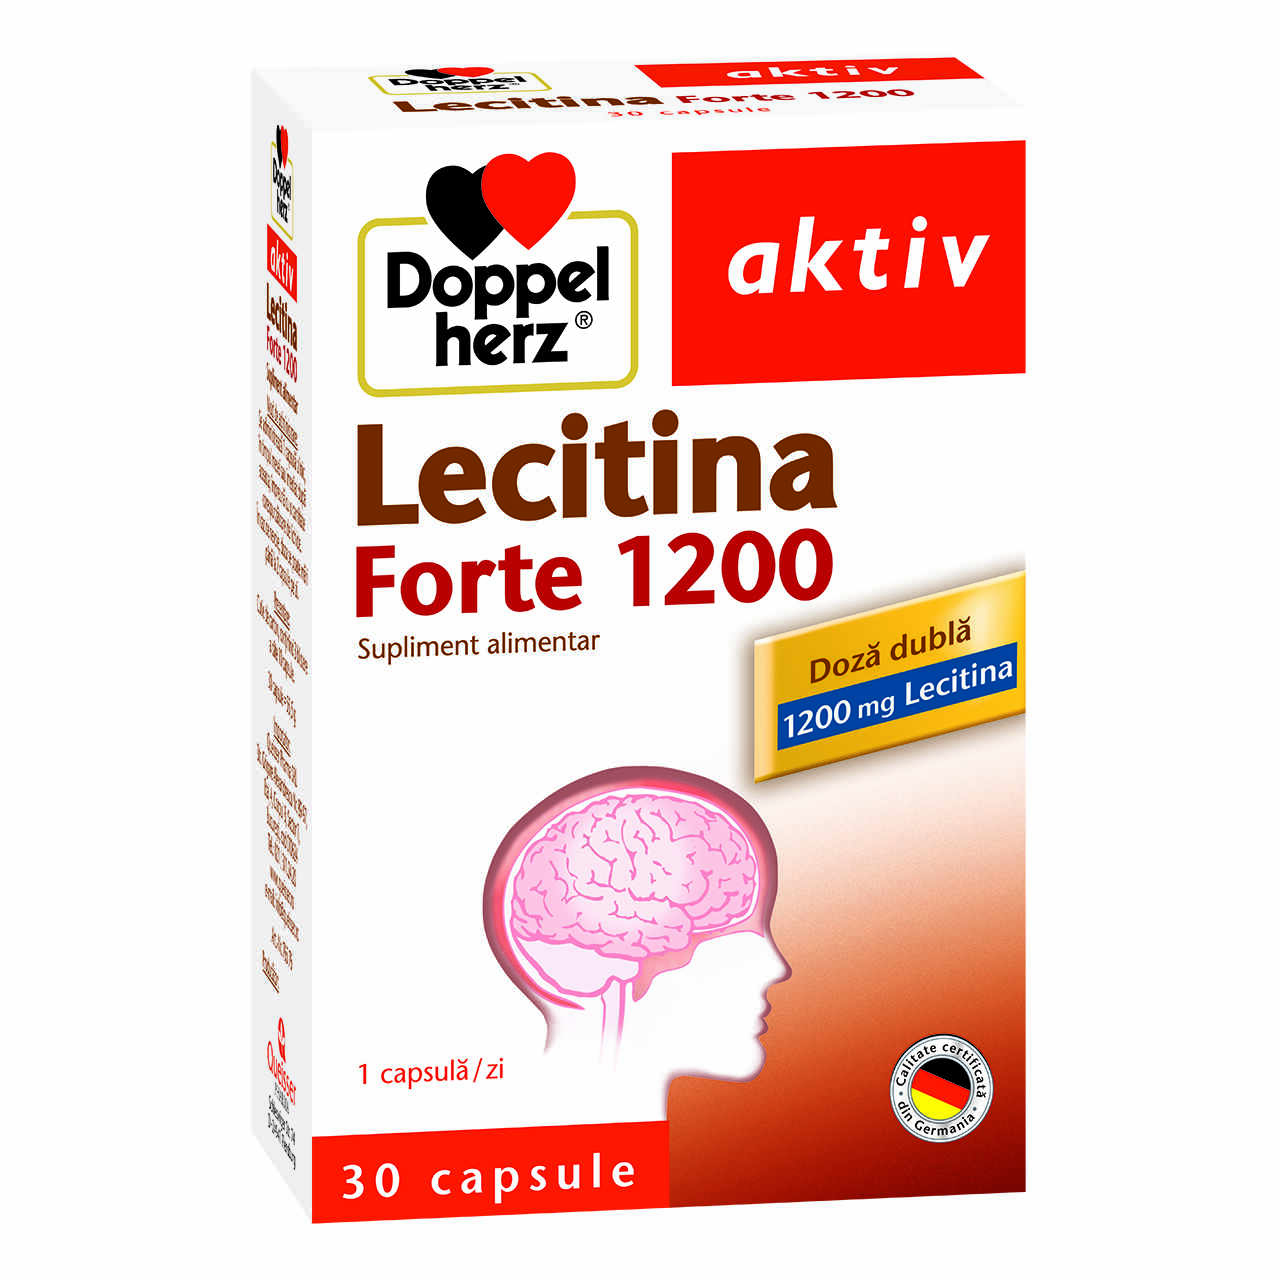 Lecitina Forte 1200 mg, 30 capsule, Doppelherz